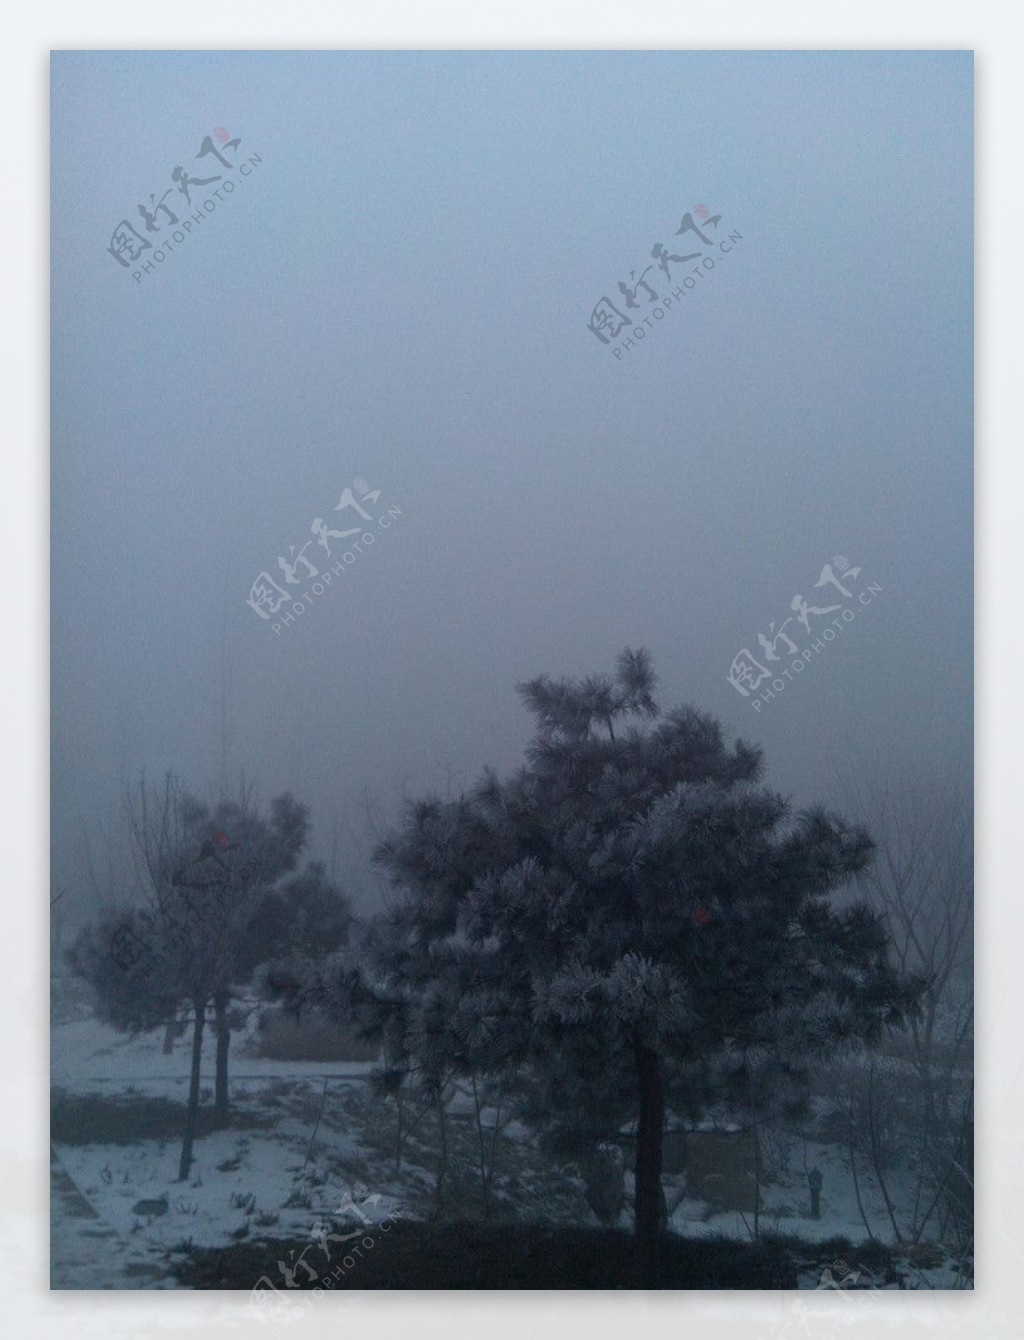 雪天的雾霾图片